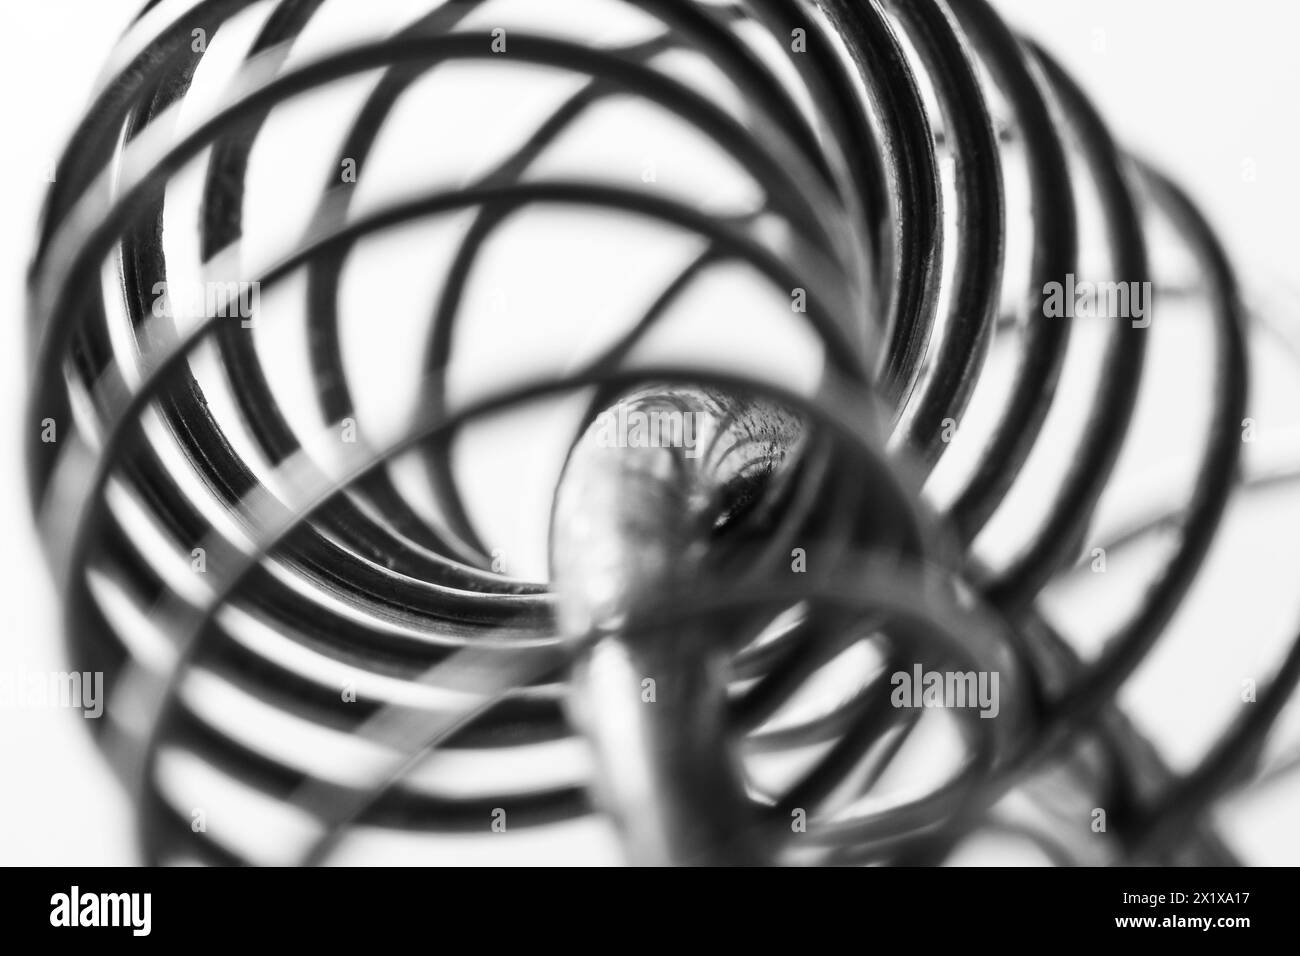 Spirale a molla in metallo, macro shot in bianco e nero, messa a fuoco morbida, arte industriale astratta Foto Stock